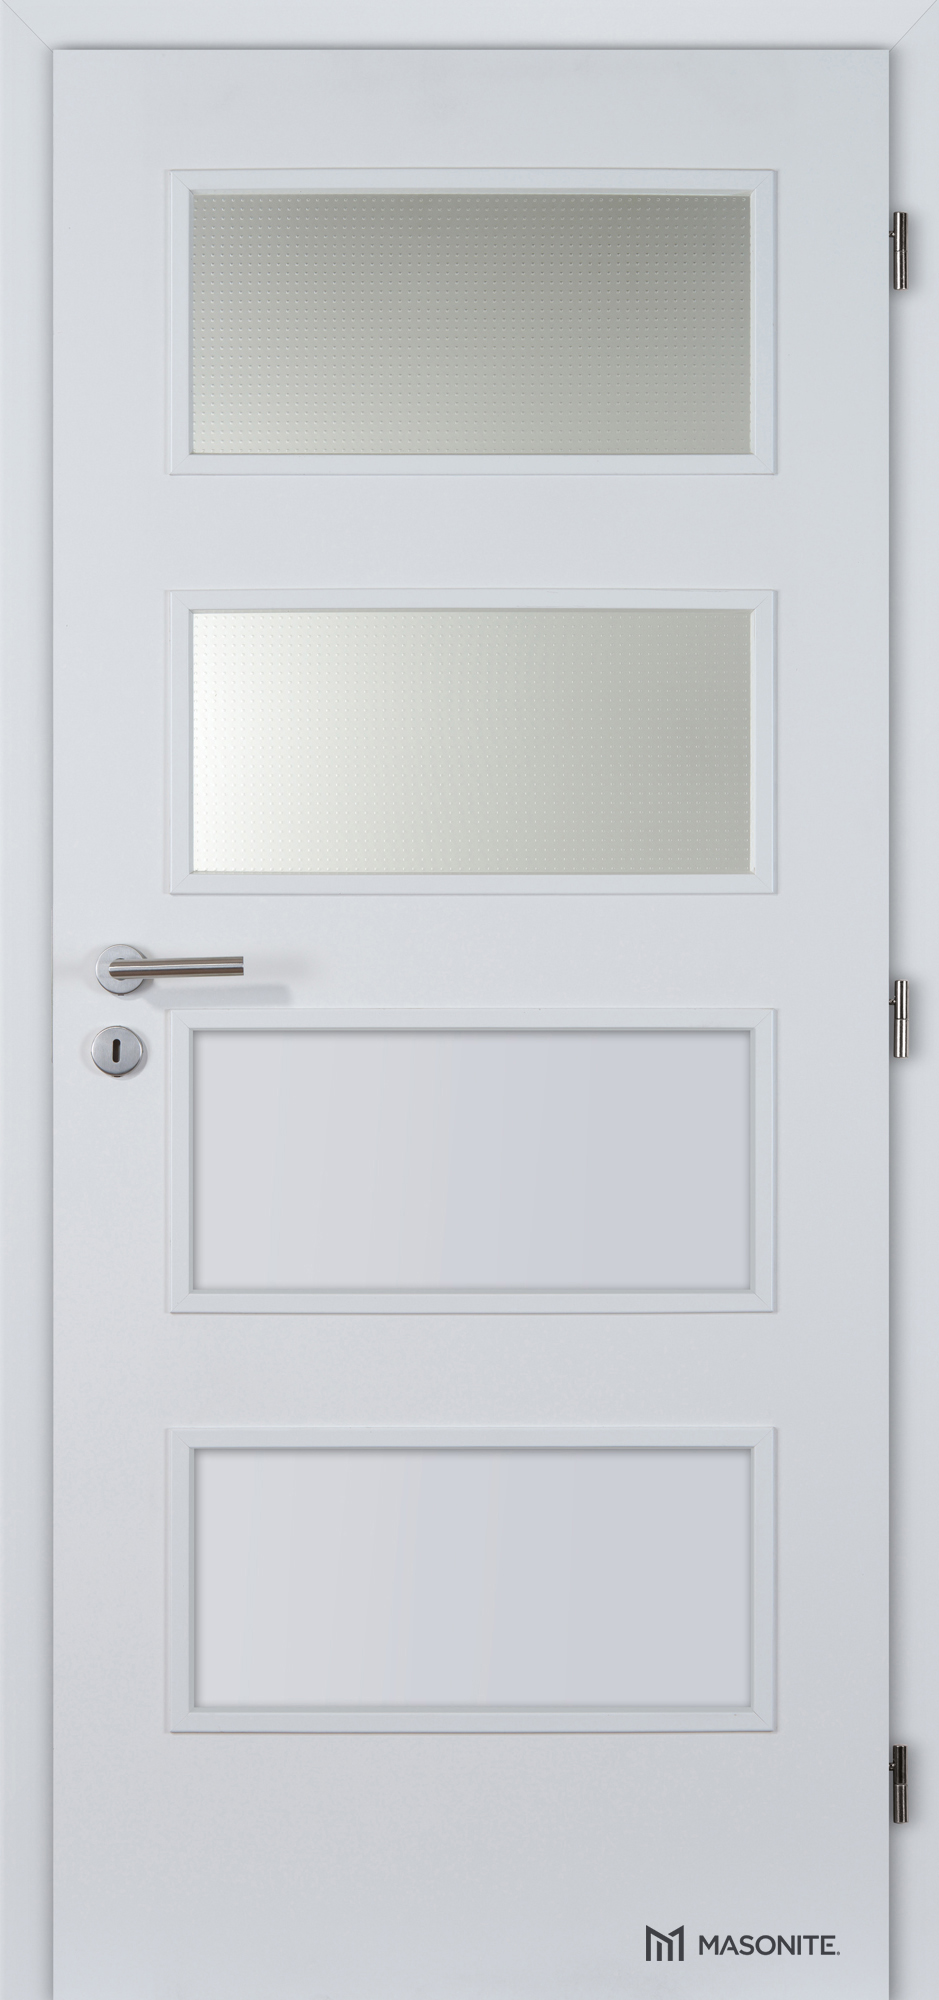 Dveře DTD DOMINANT 2x piskované sklo CPL bílá